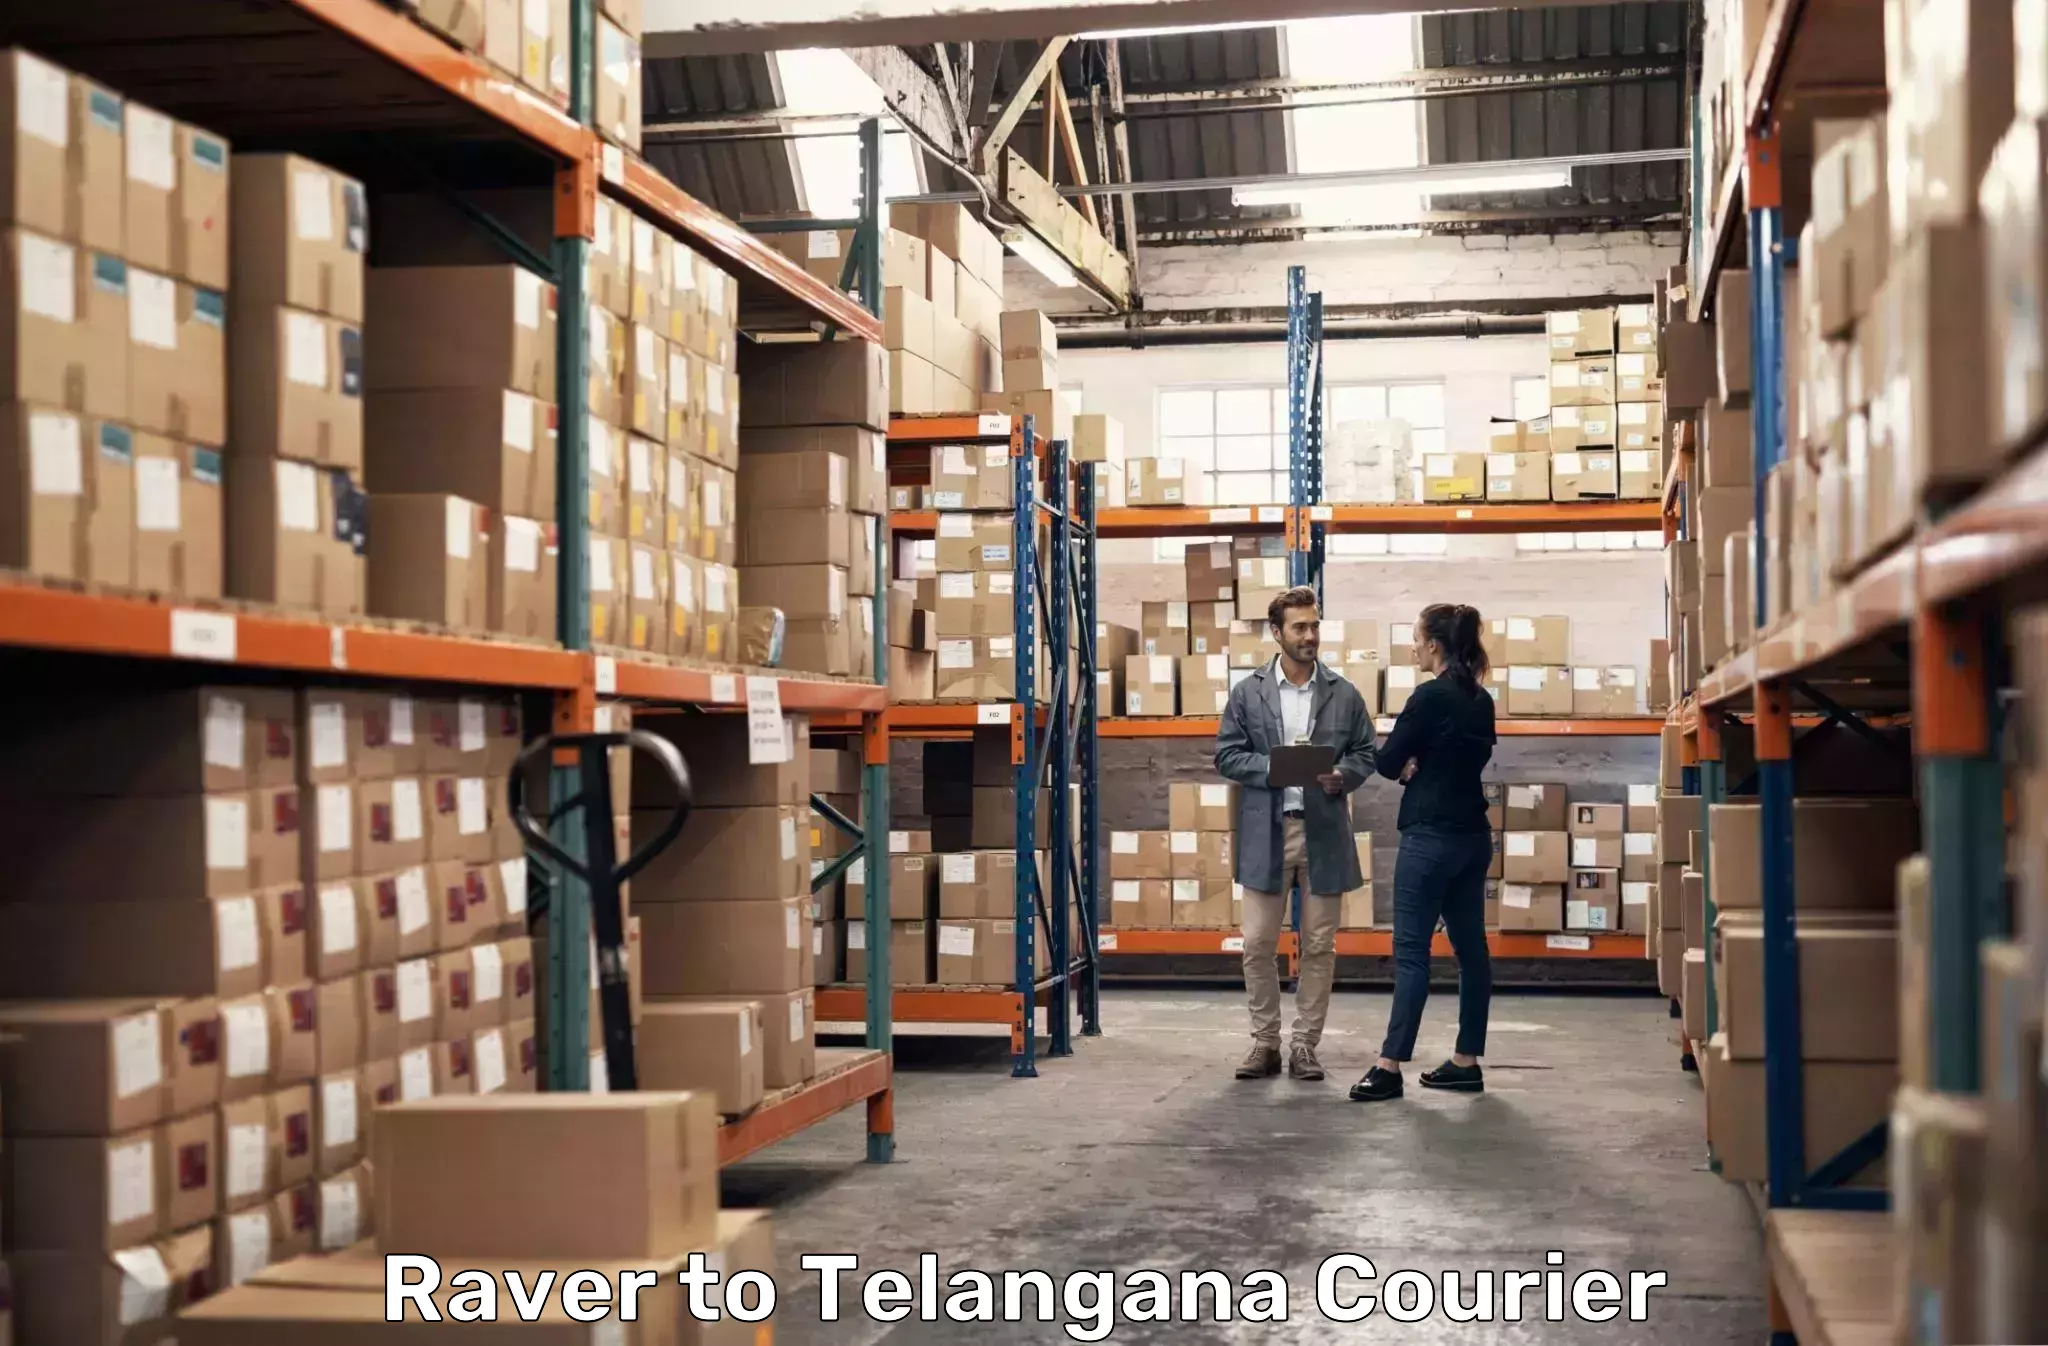 Urban courier service Raver to Tallada